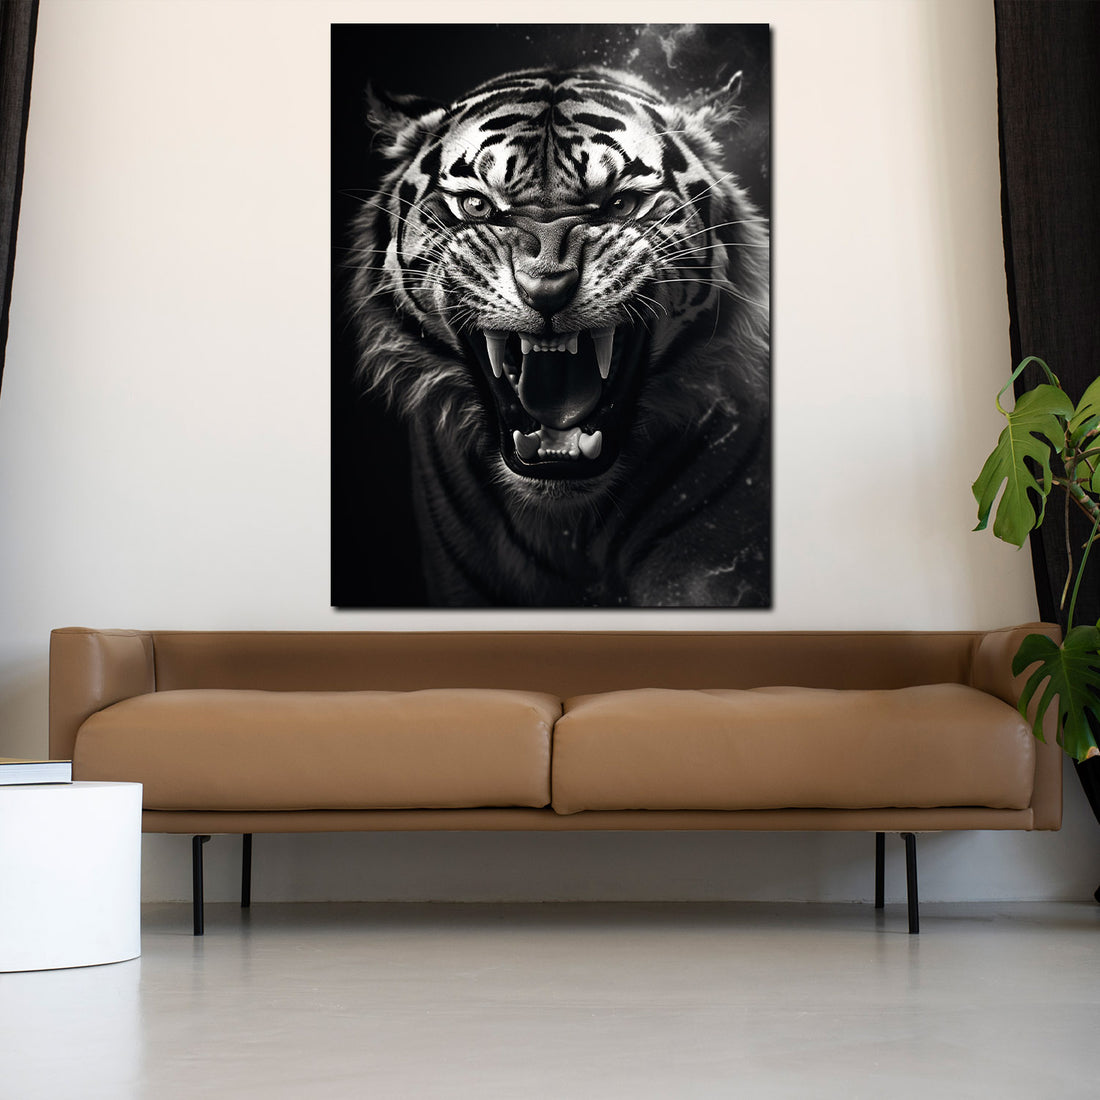 Wandbild Tiger schwarz weiß